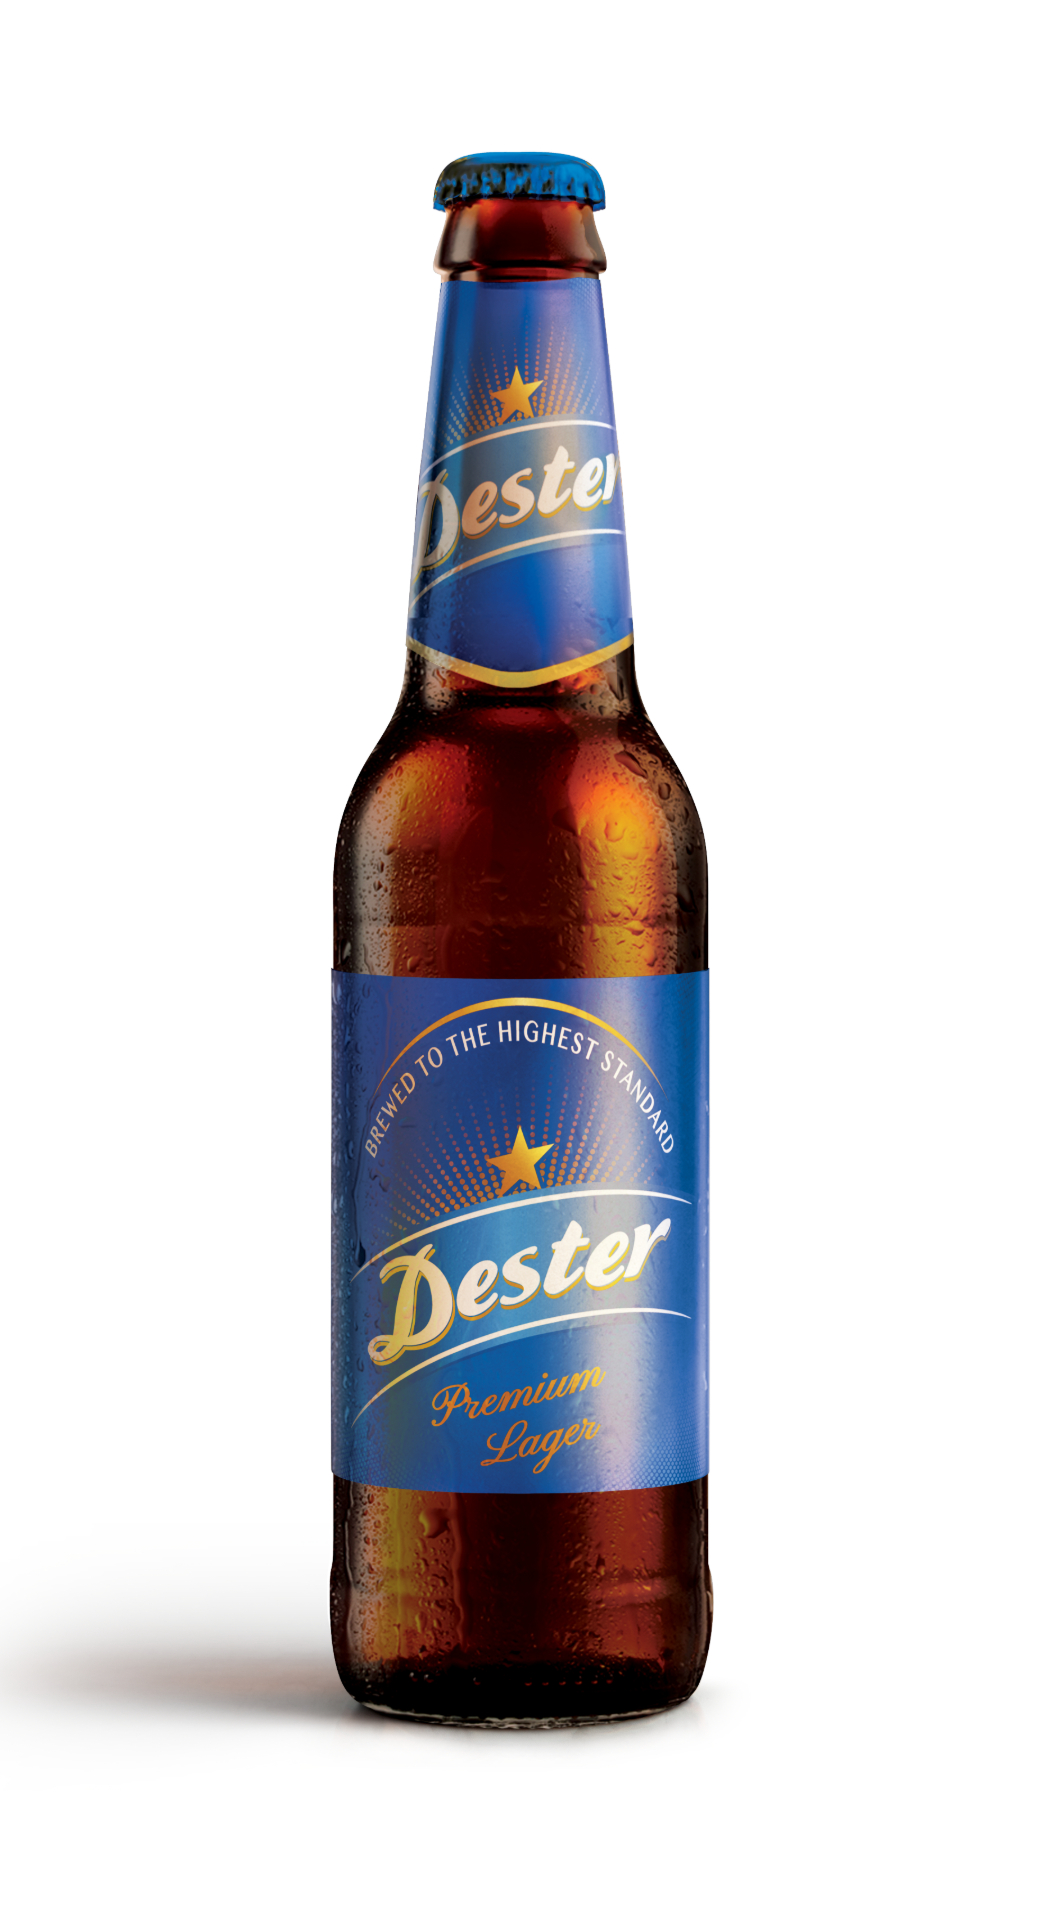 Dester Premium Lager Beer